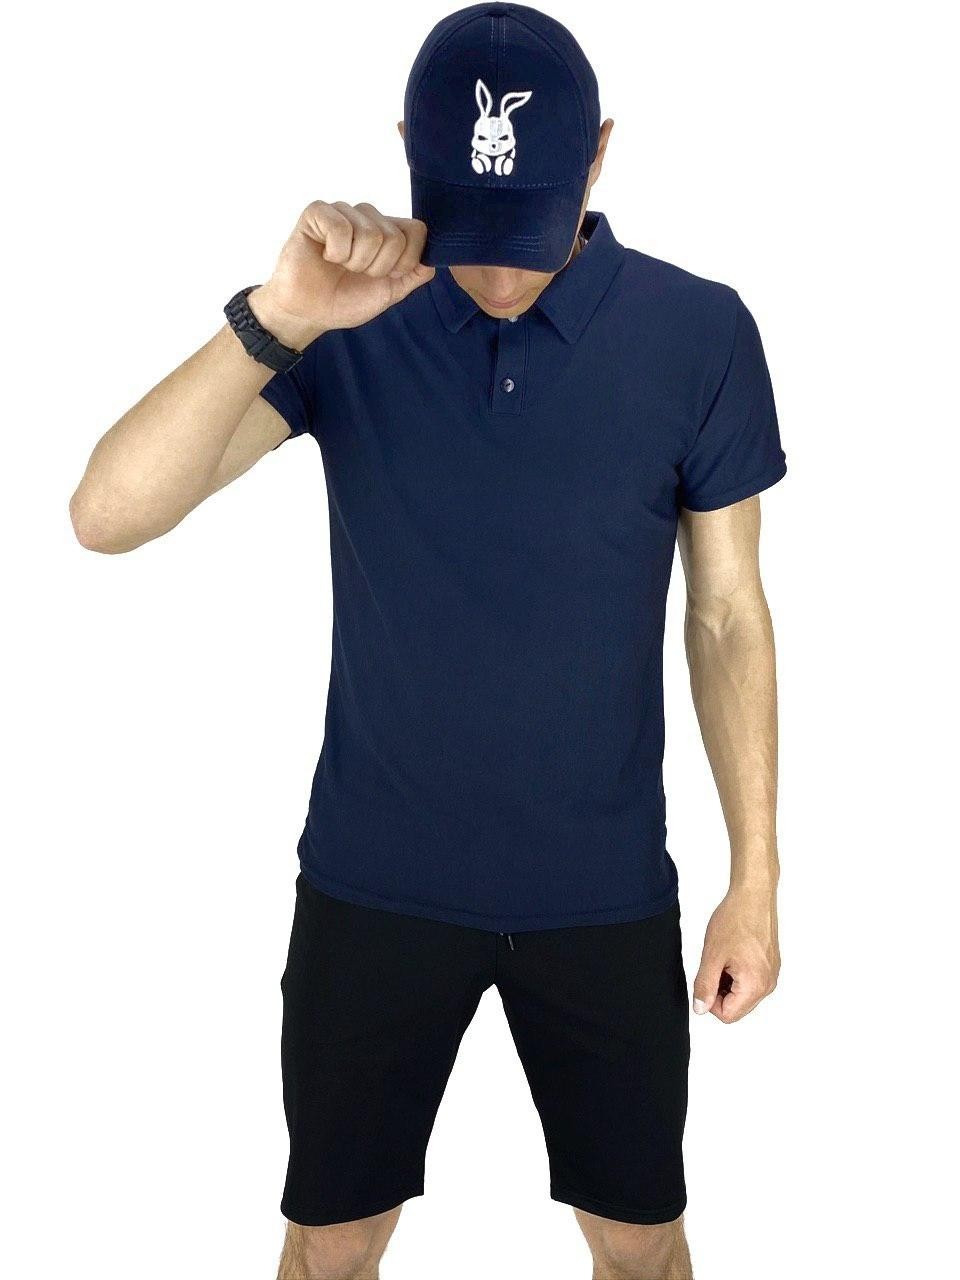 Костюм Intruder LaCosta річний (Чоловіча футболка поло, Чоловічі шорти трикотажні, Кепка) синій-чорний Intruder